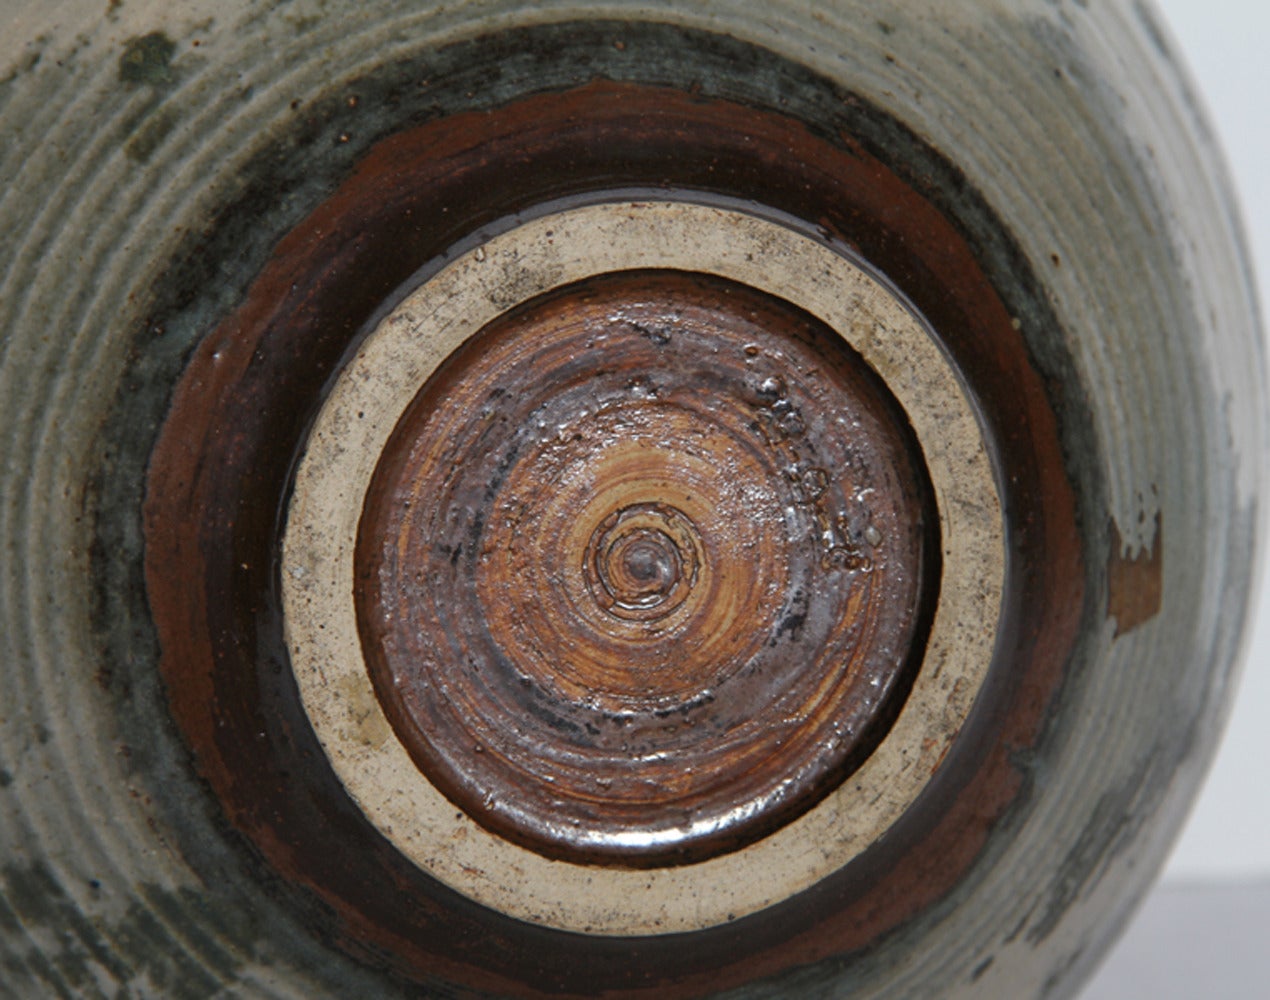 Jahr: 1966
Medium: Vase aus glasierter Keramik, datiert auf dem Boden
Größe: 12 Zoll x 9 Zoll x 9 Zoll (30,48 cm x 22,86 cm x 22,86 cm)